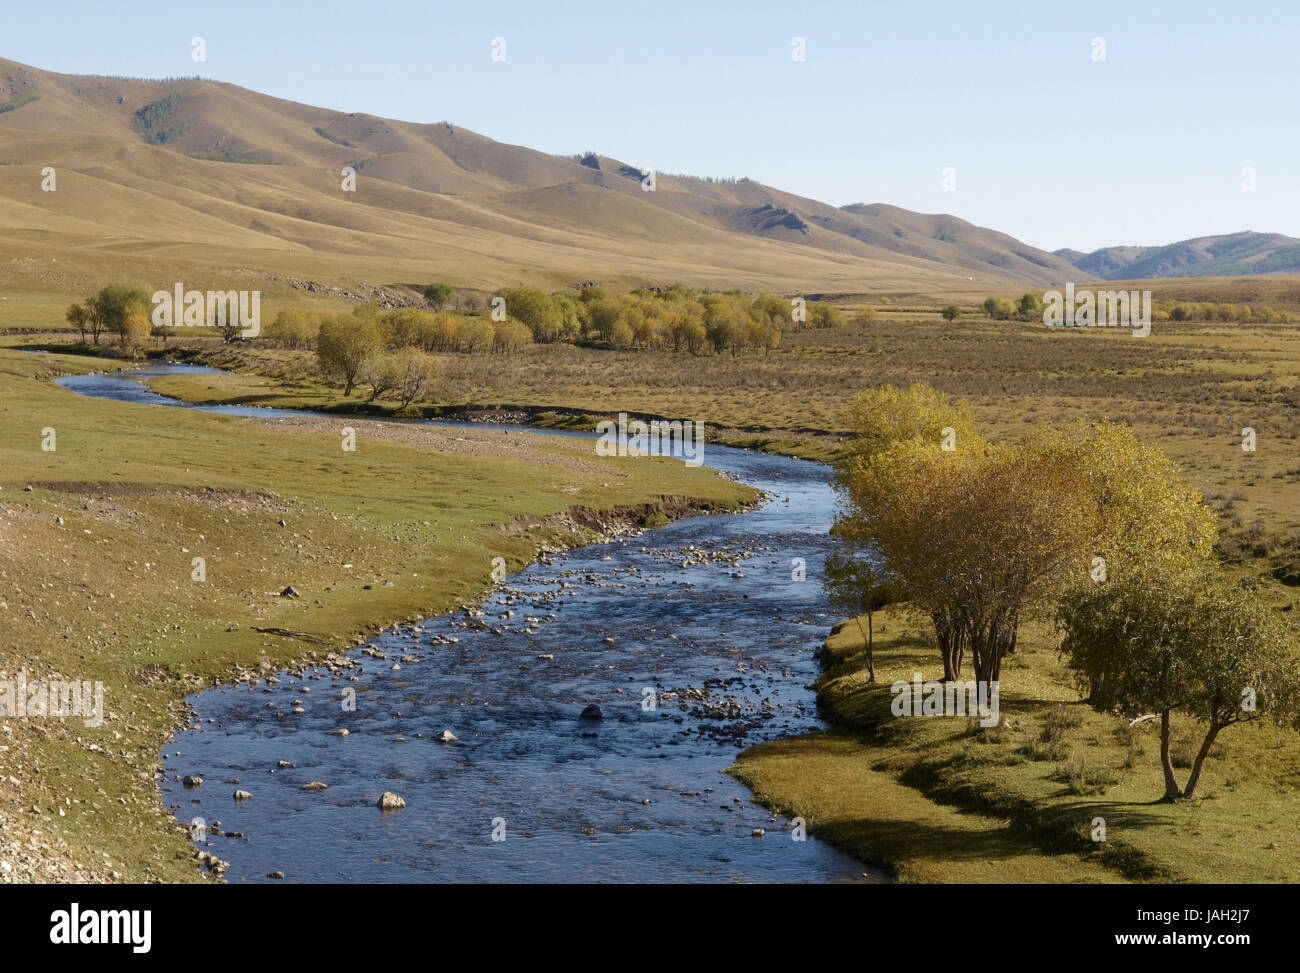 La Mongolie, l'Asie centrale, la province Arkhangai,river valley, Banque D'Images